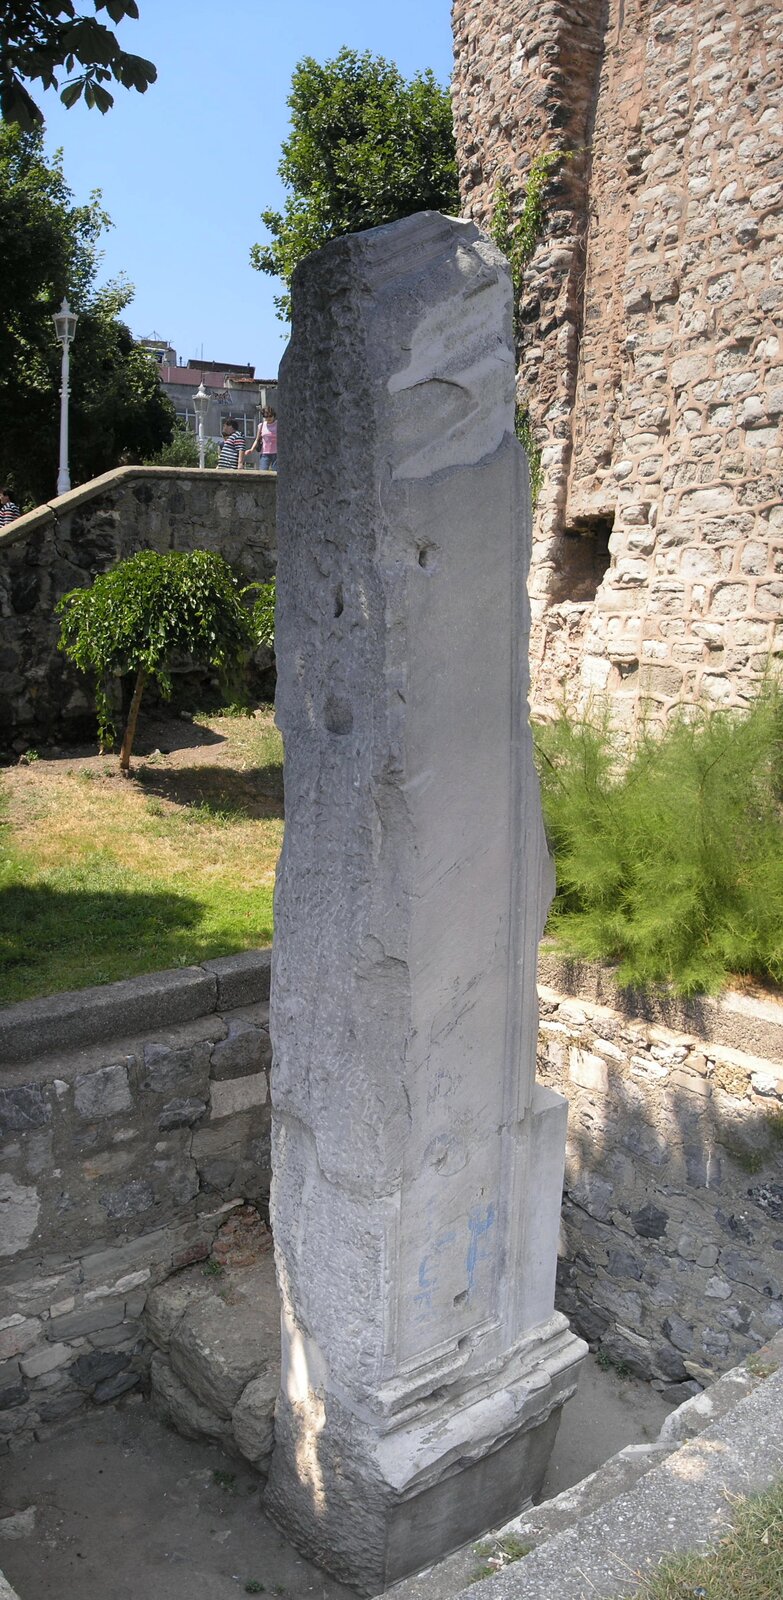 Zdjęcie przedstawia mocno zniszczoną kolumnę stojącą w pobliżu starego muru wykonanego z kamieni. Kolumna jest wysoka, o kształcie prostopadłościanu.